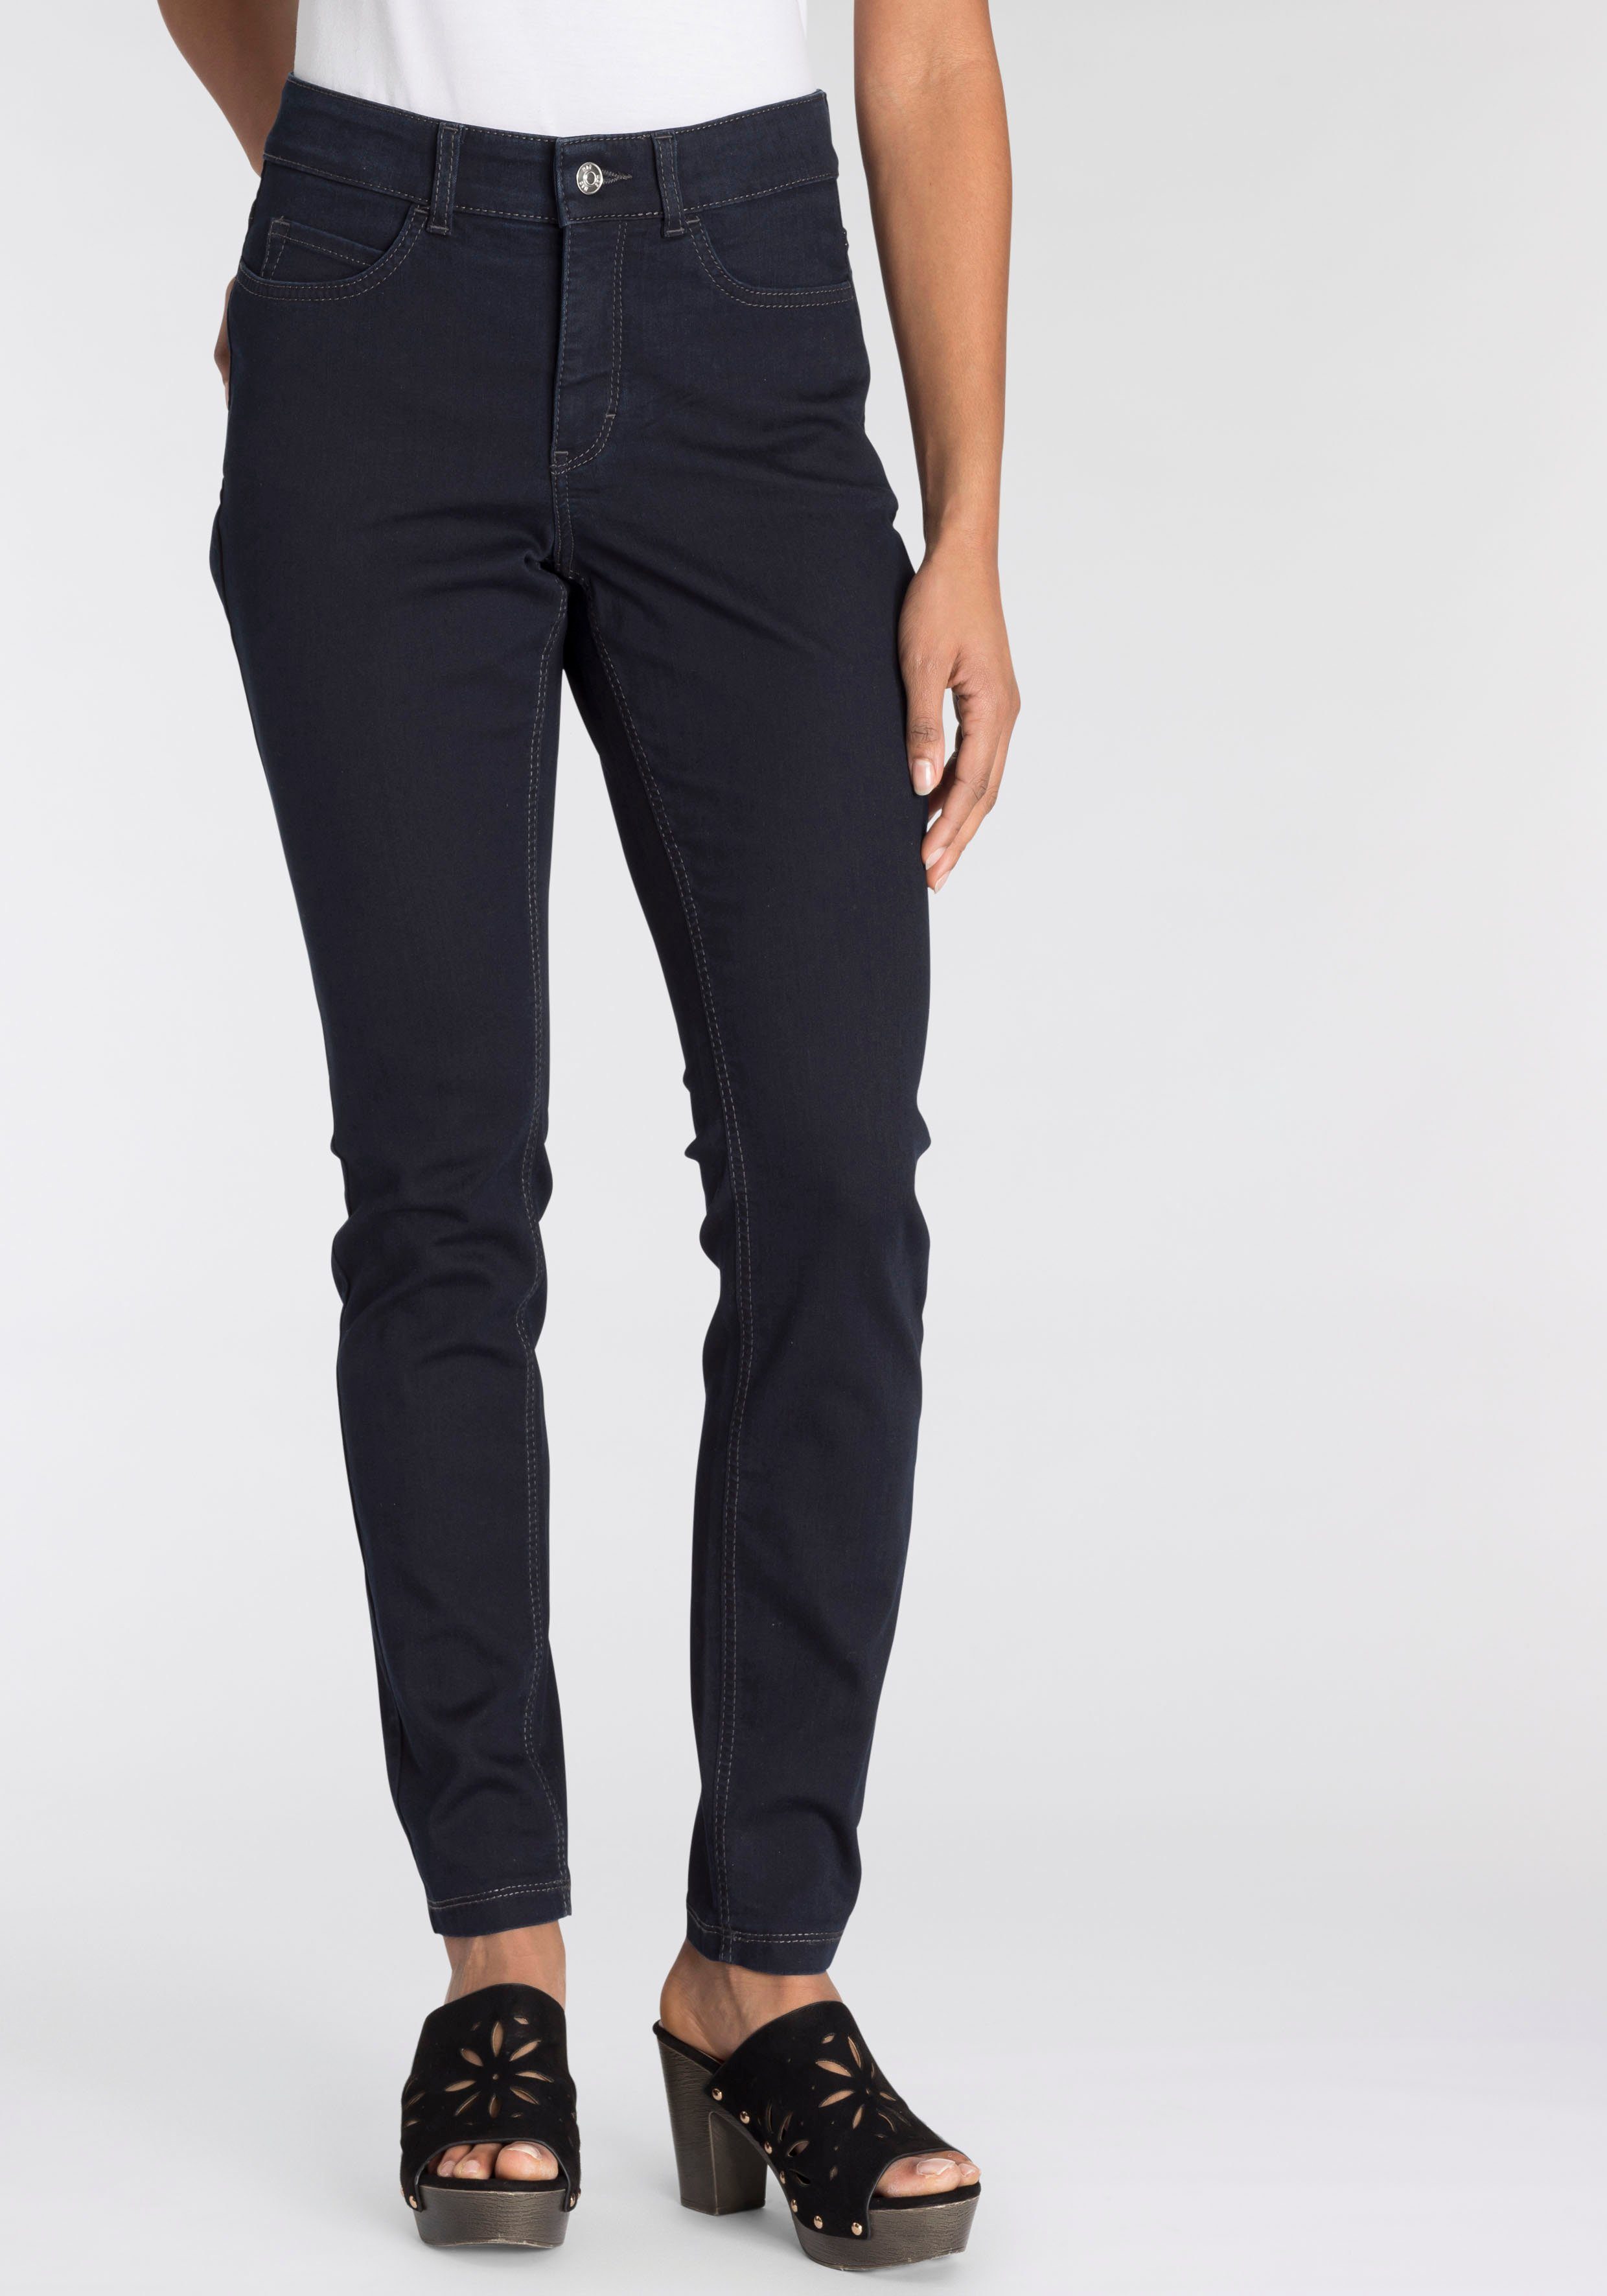 Hiperstretch-Skinny Skinny-fit-Jeans Power-Stretch MAC rinsed Tag den blue ganzen Qualität dark bequem sitzt